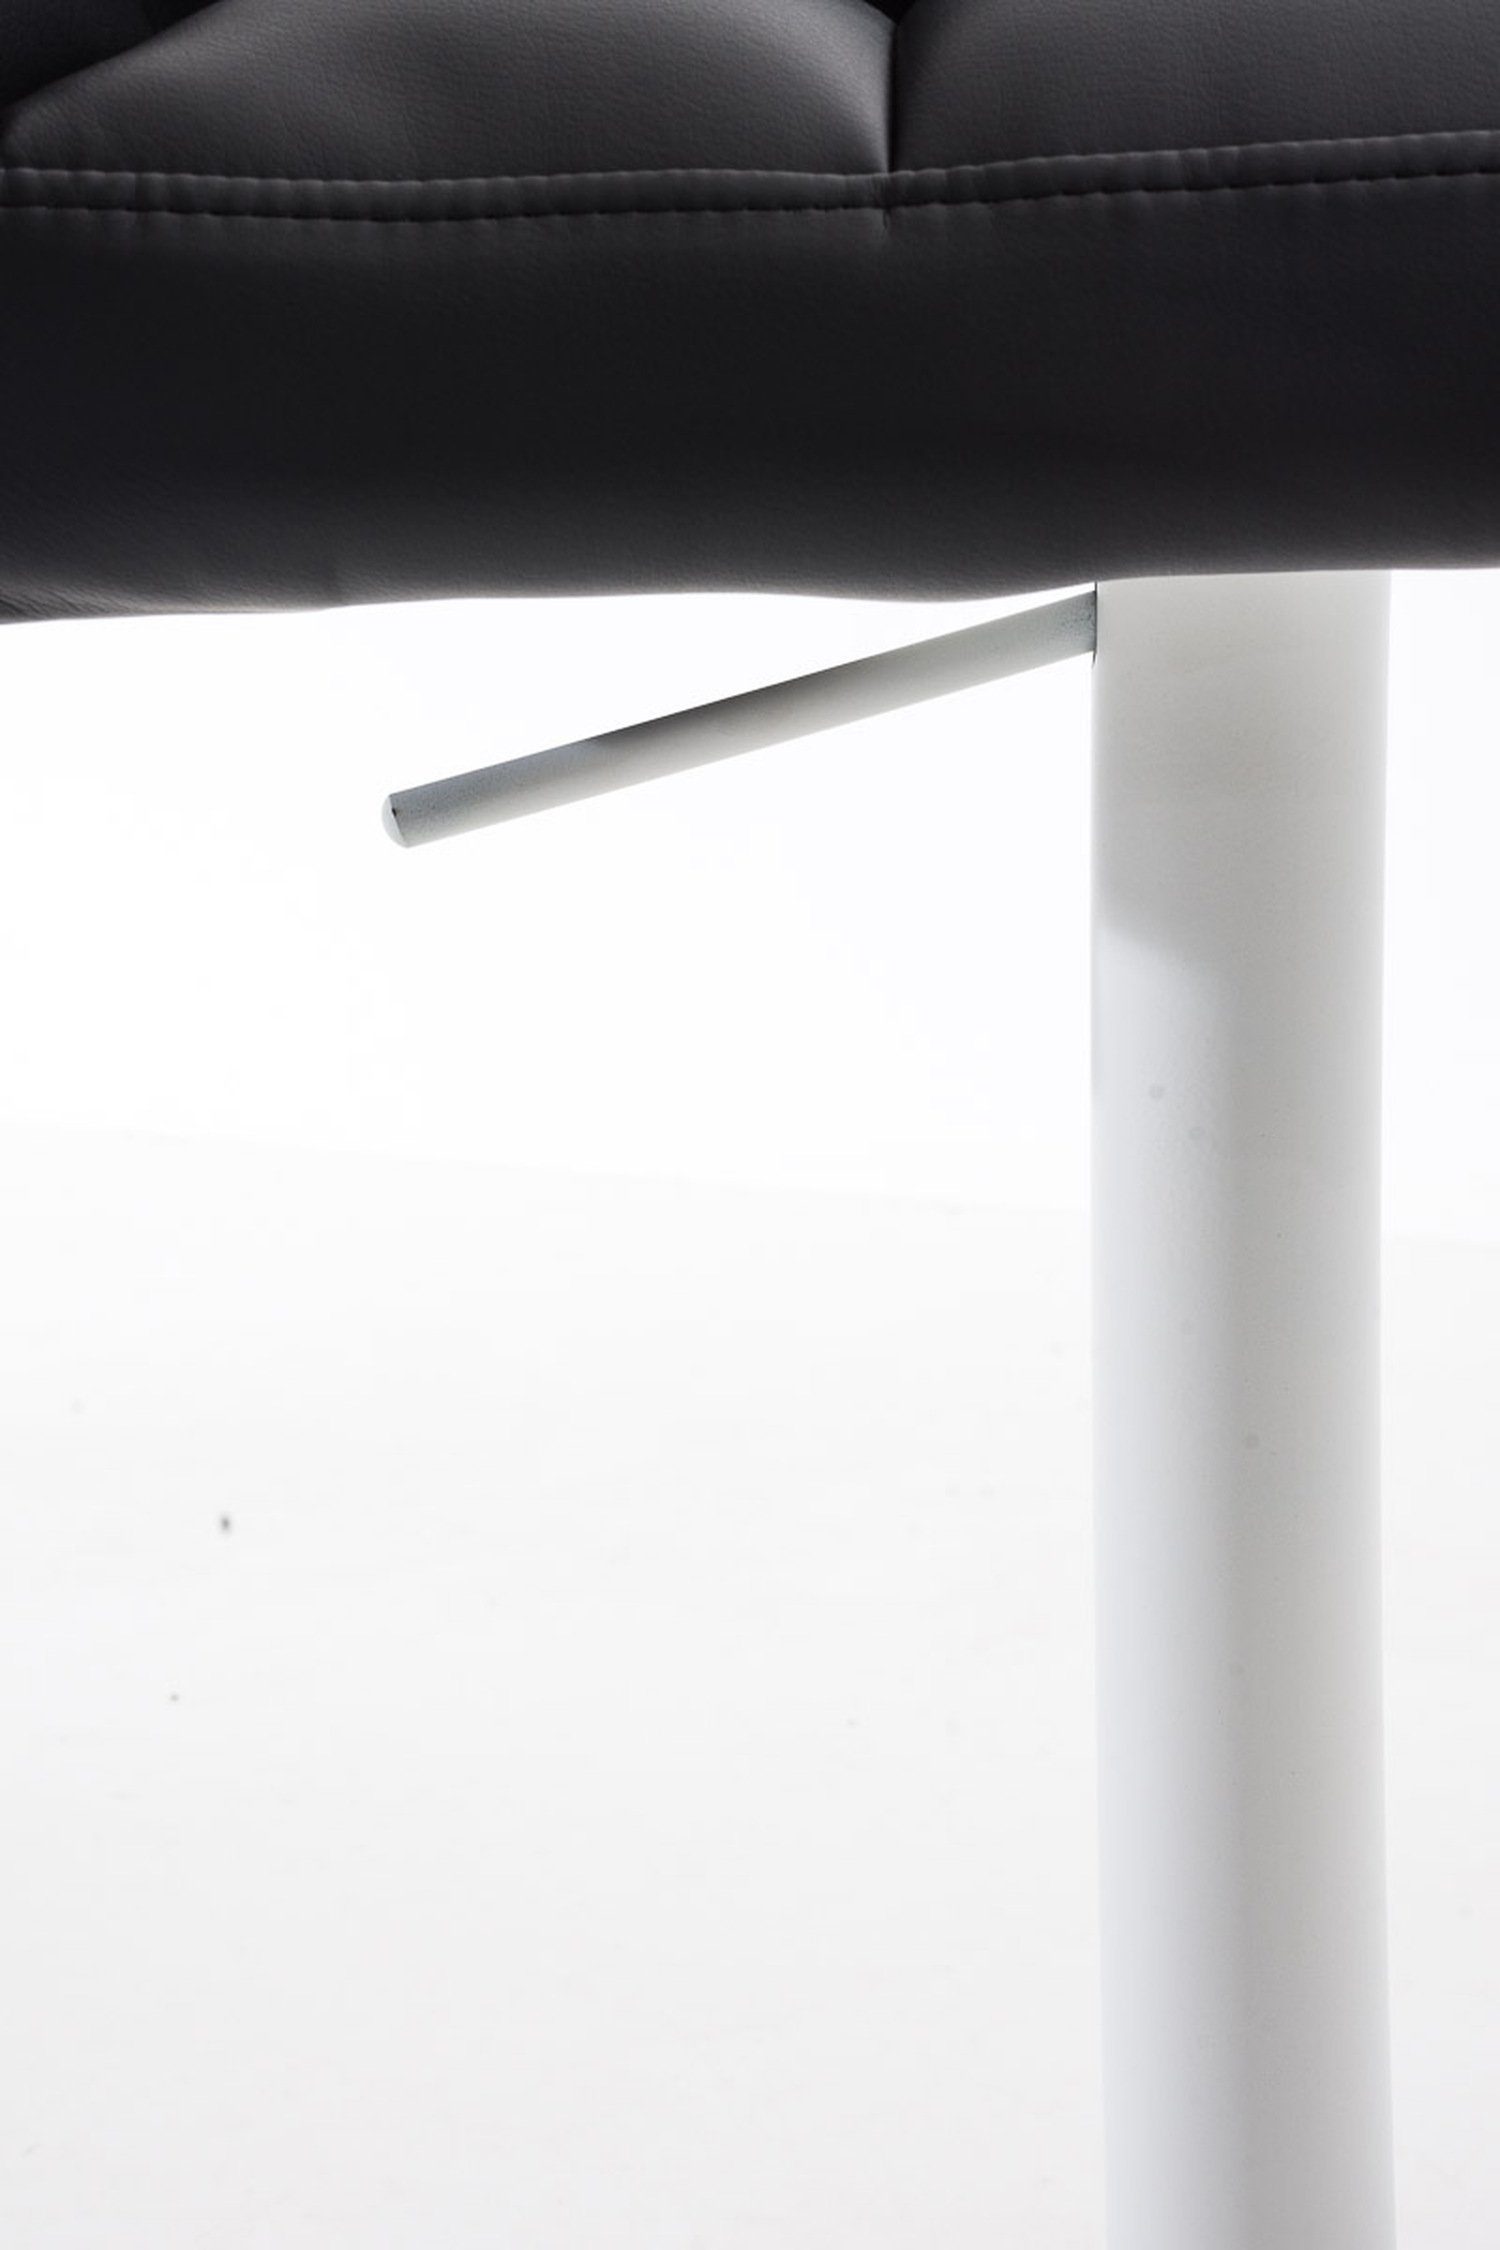 TPFLiving Barhocker Sitzfläche: Metall & - und Schwarz - Fußstütze Kunstleder (mit Rückenlehne weiß 360° drehbar Küche), für - Hocker Damaso Theke